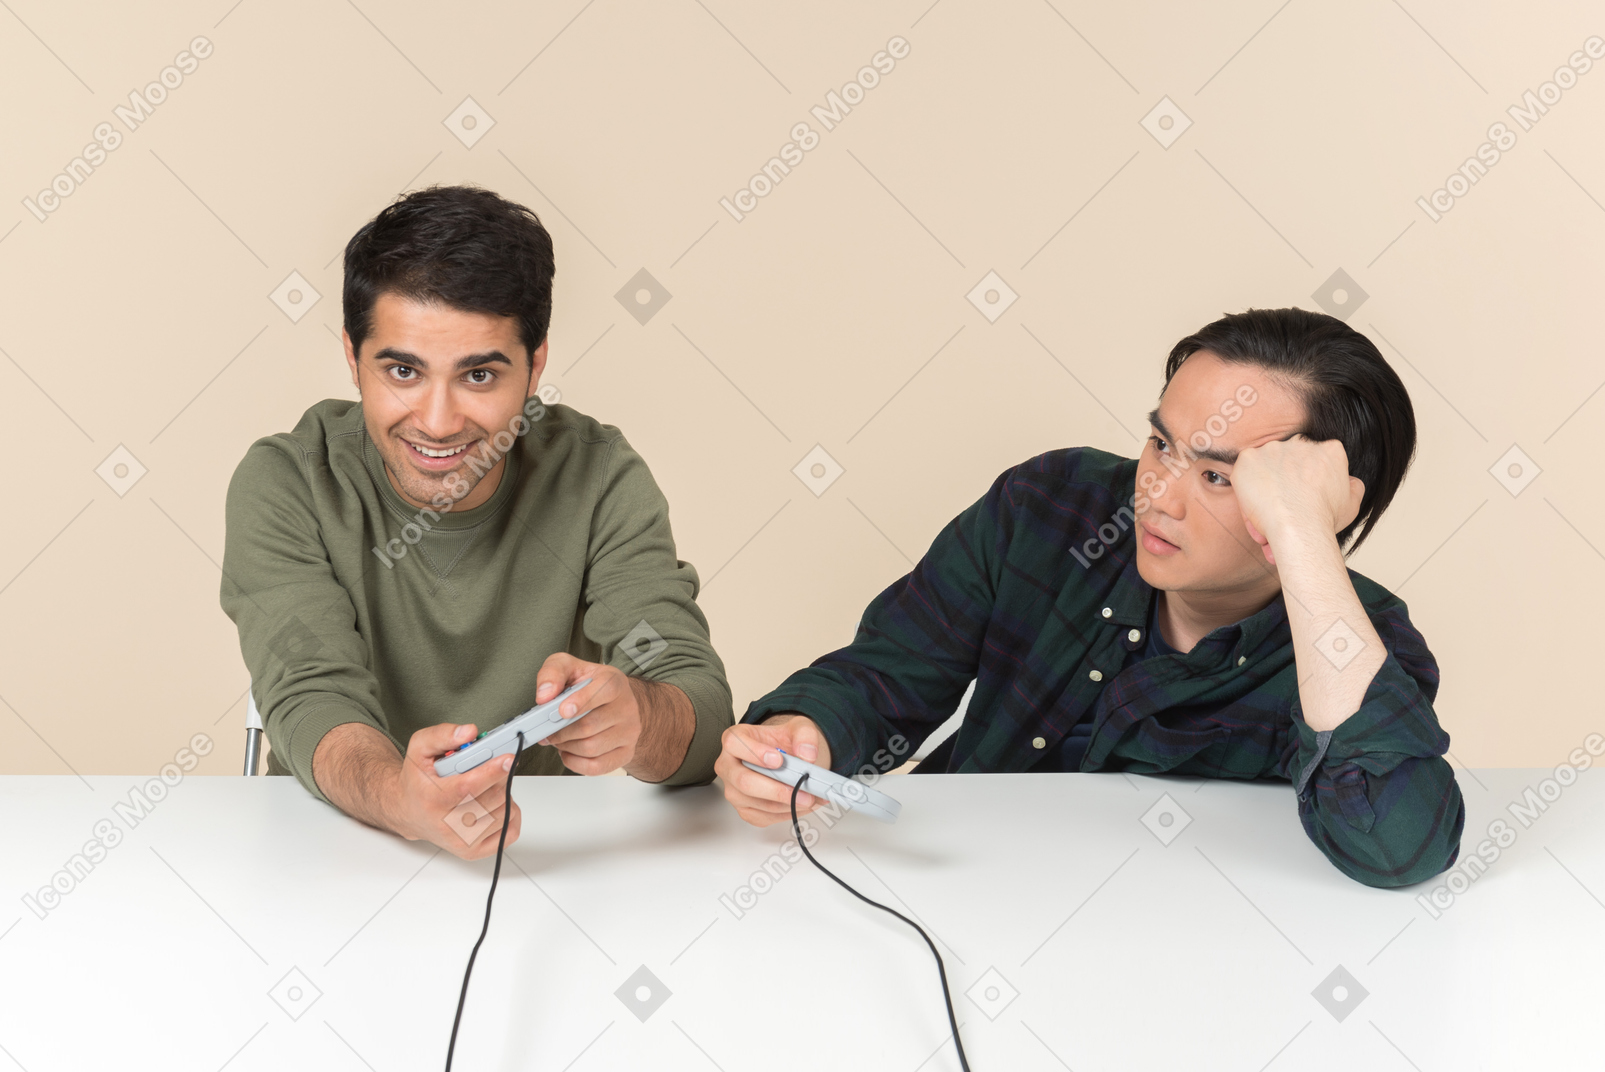 Межрасовые друзья играют в видеоигры, и один из них выглядит раздраженным